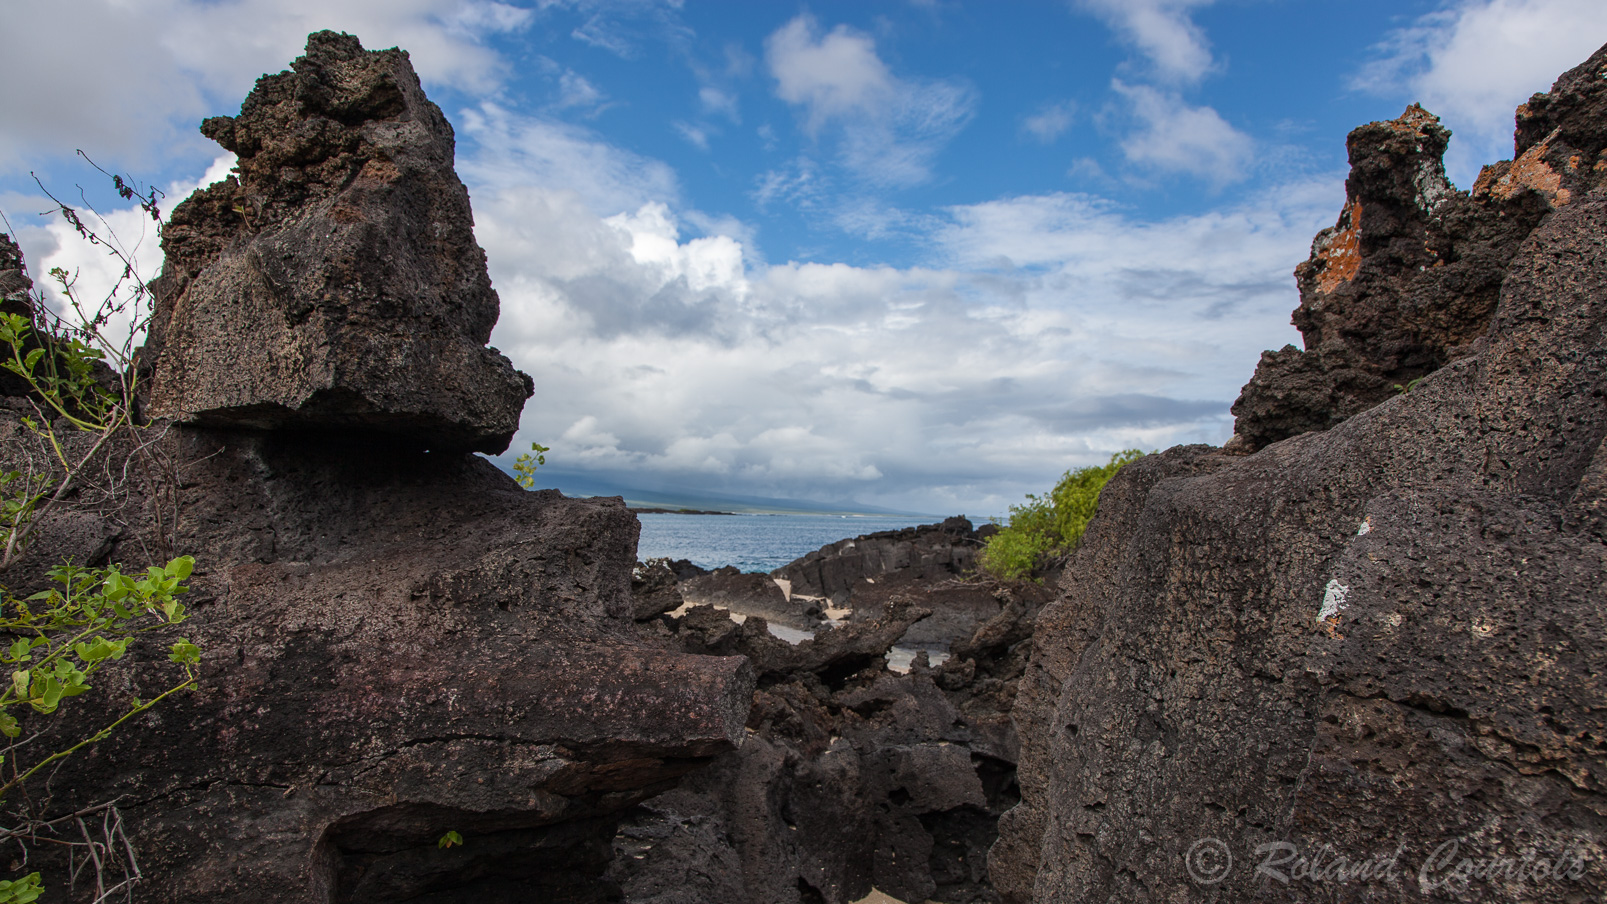 L'île San Cristobal est couverte de roches basaltiques.